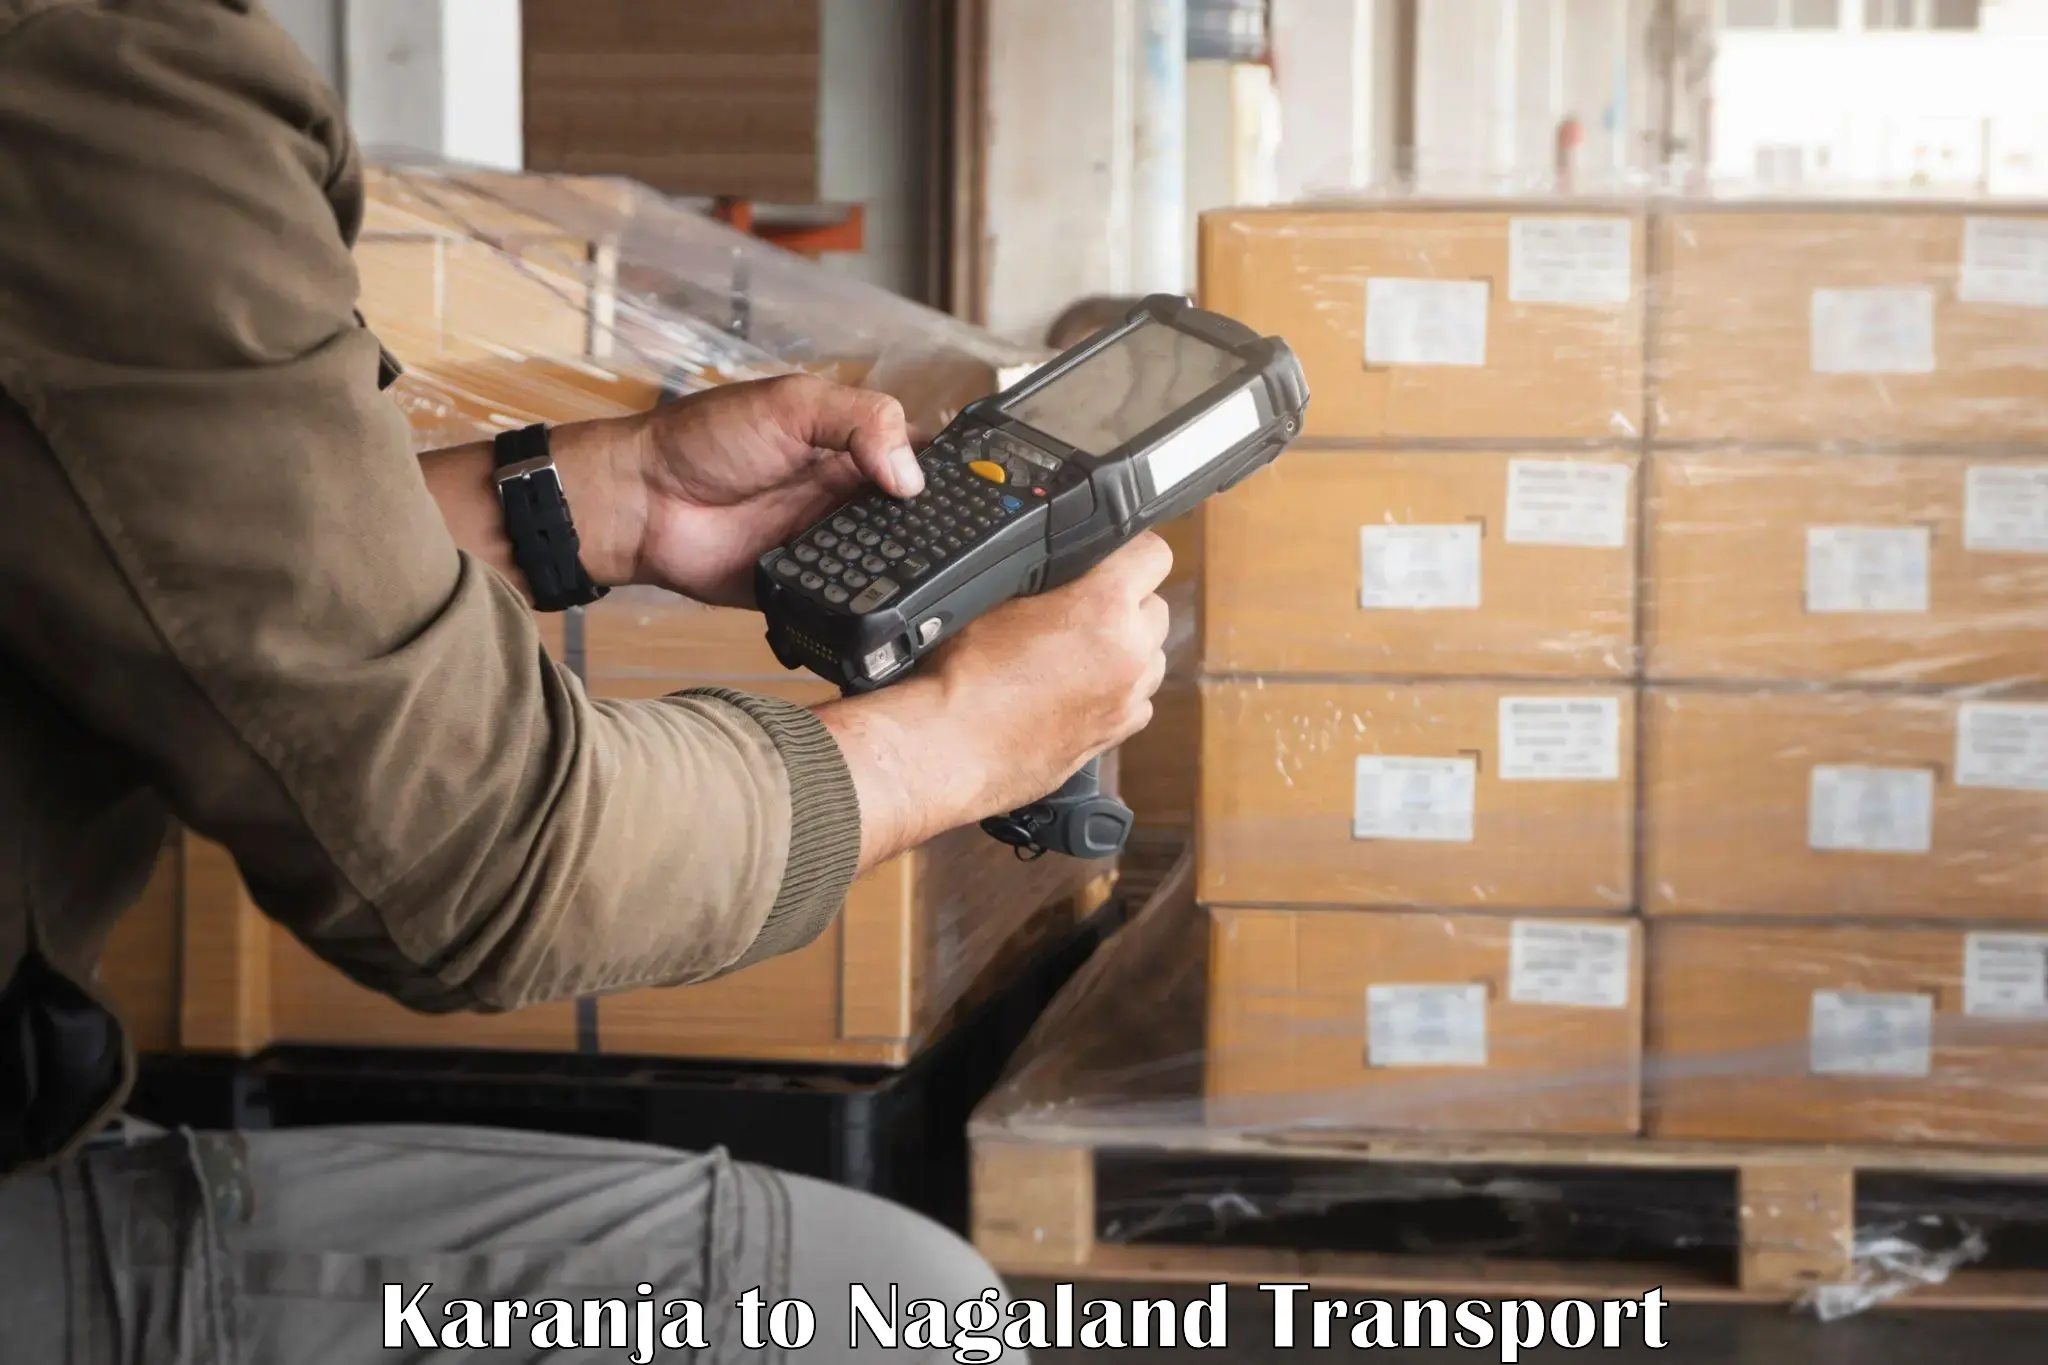 All India transport service Karanja to Nagaland